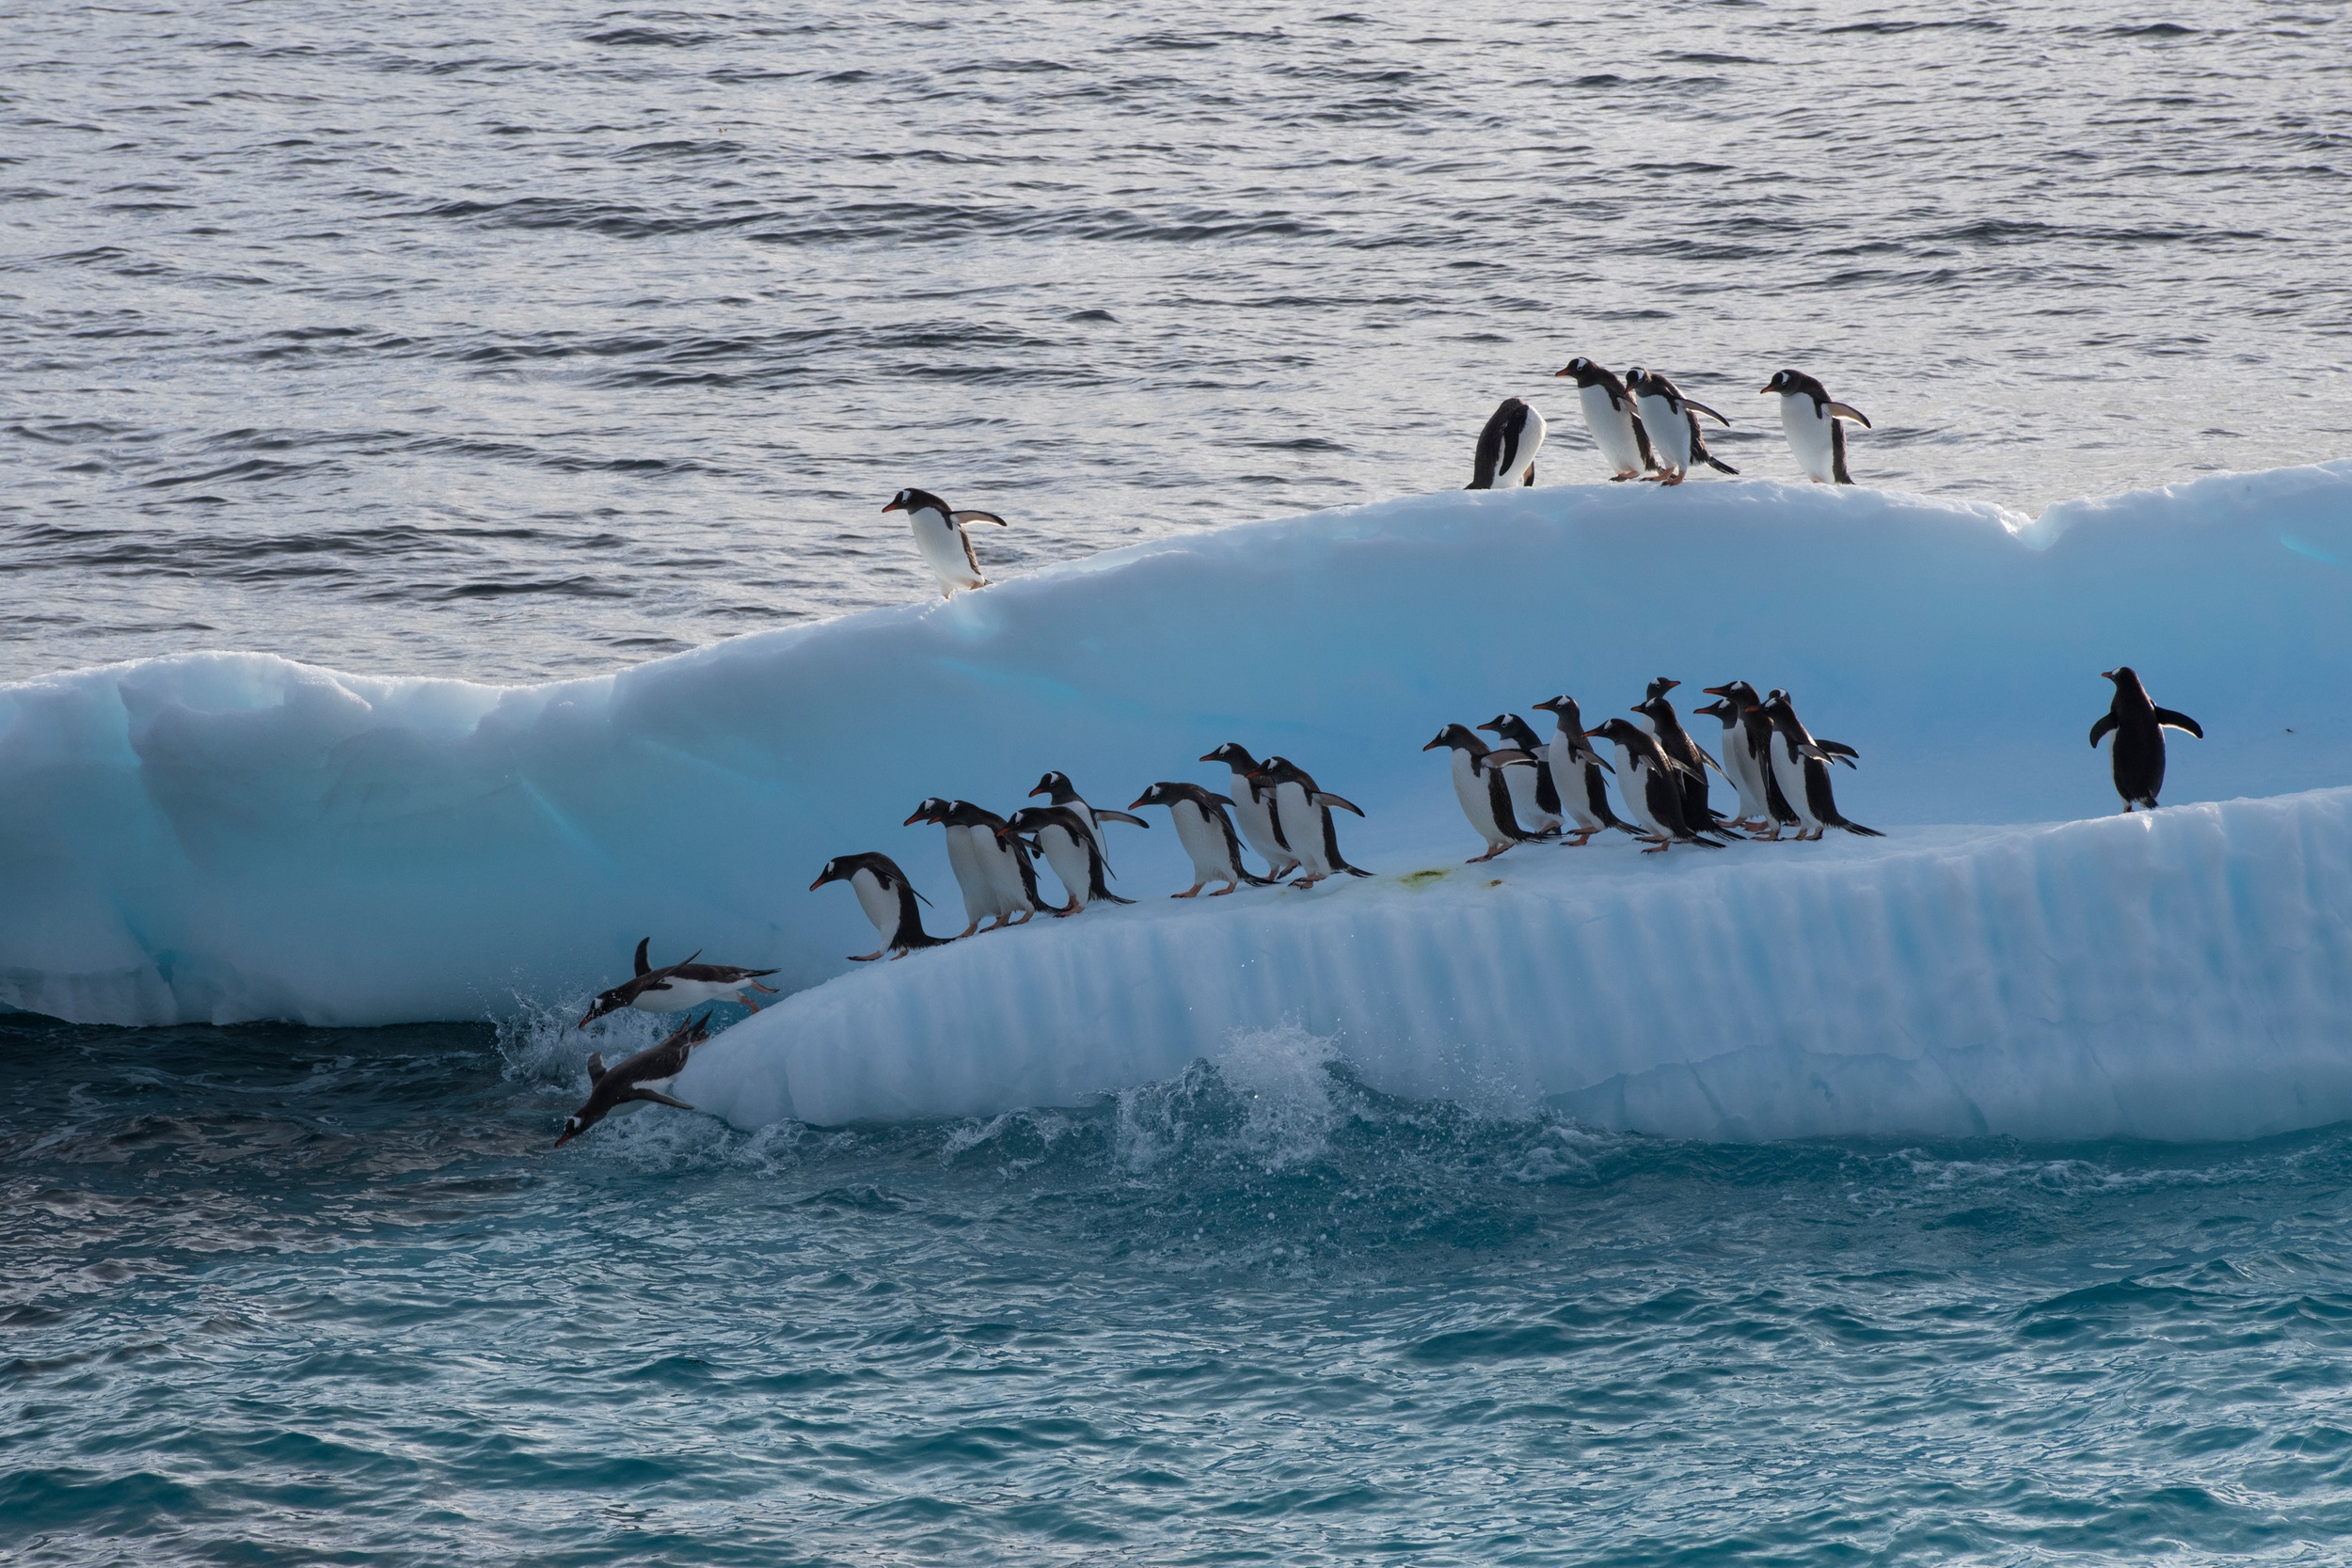 Gentoo penguins on an ice flow in Errera channel, Antarctic Peninsula. © Daniel Beltrá / Greenpeace